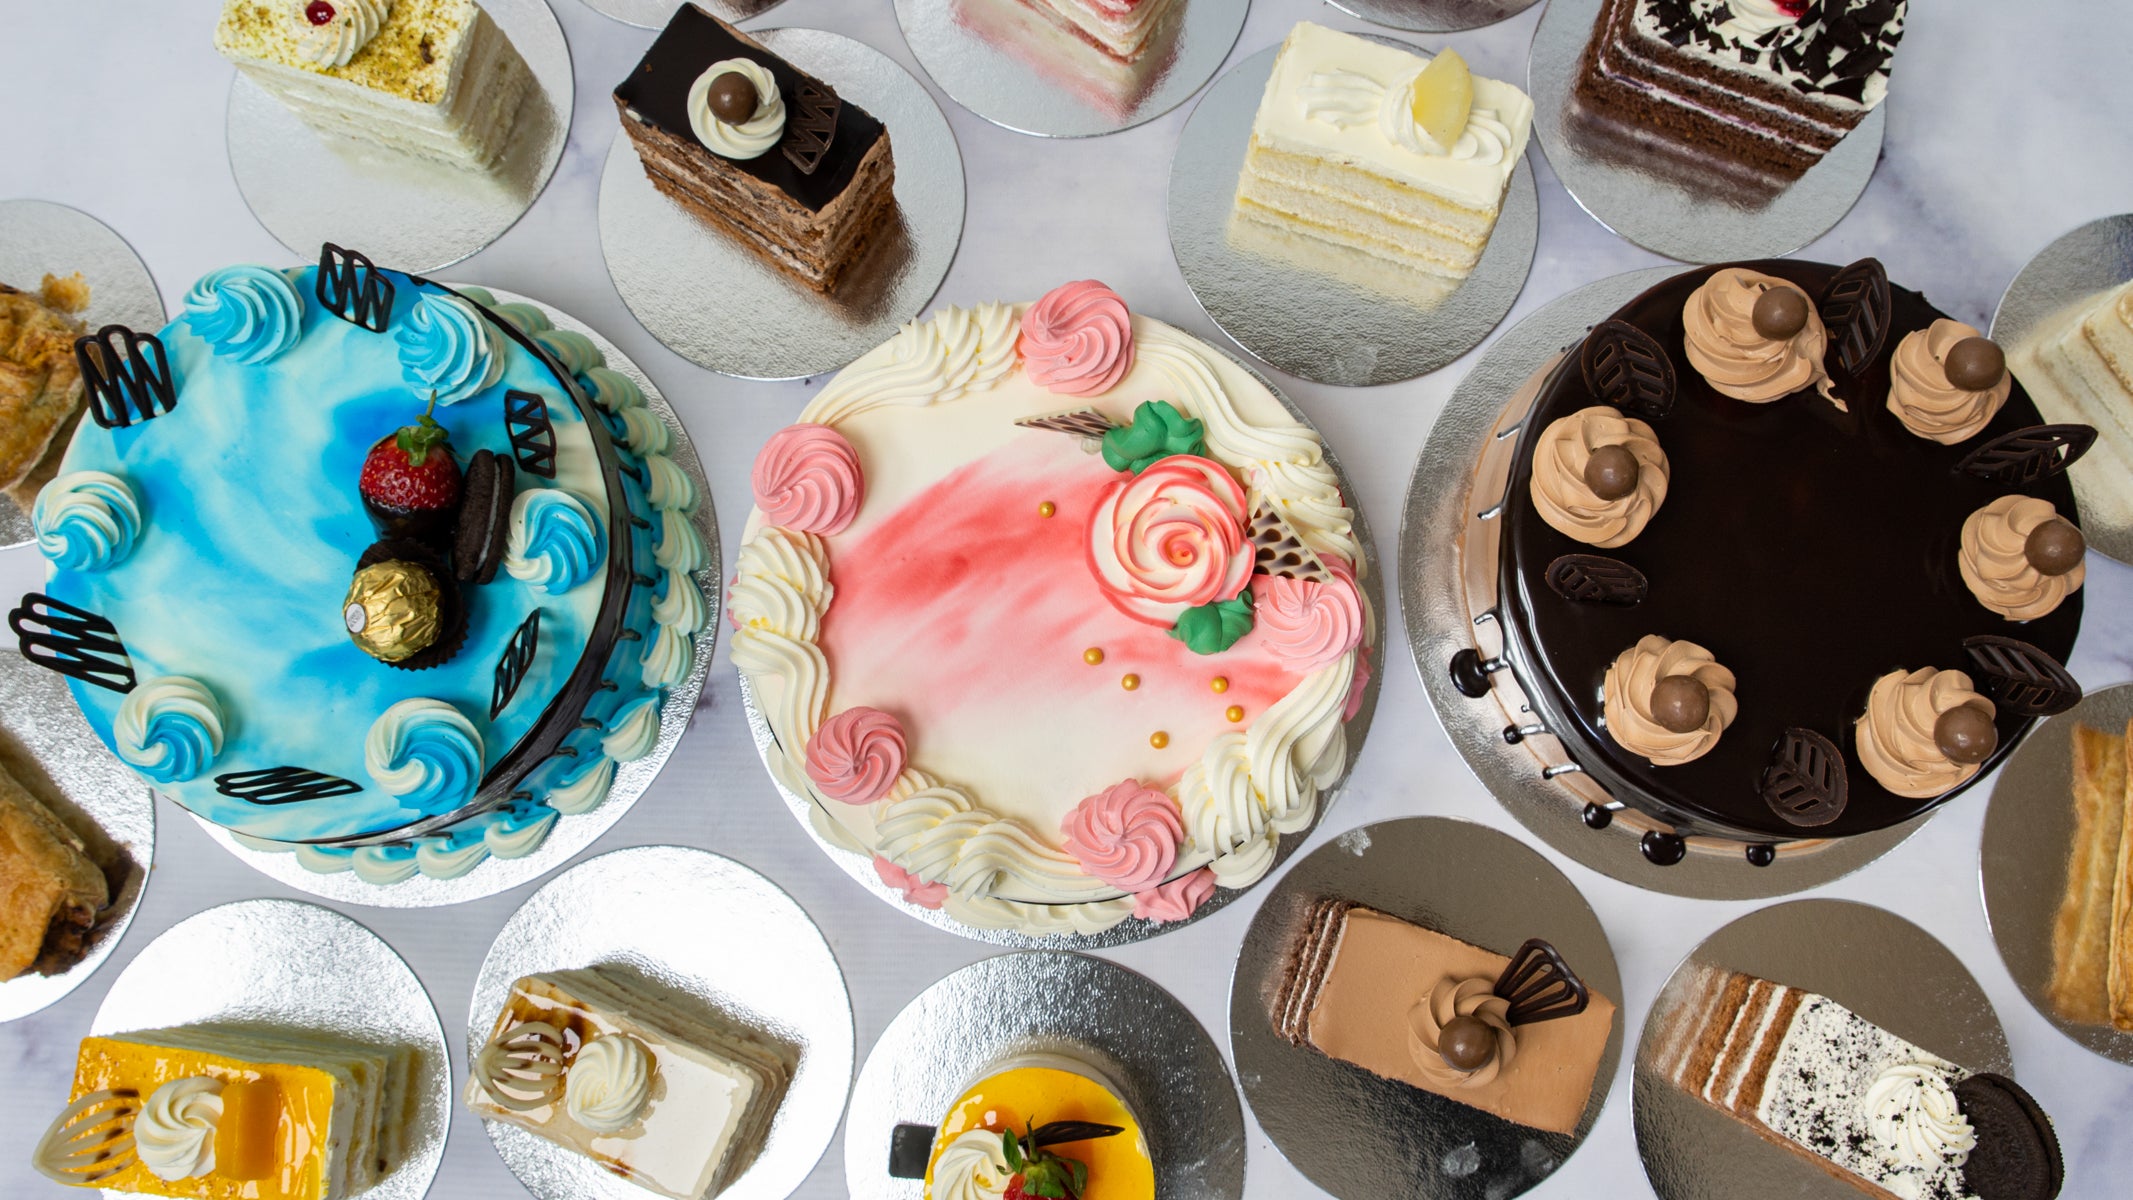 Exquisite Birthday Cakes, Milk Cakes, School Cakes - Cake Trays